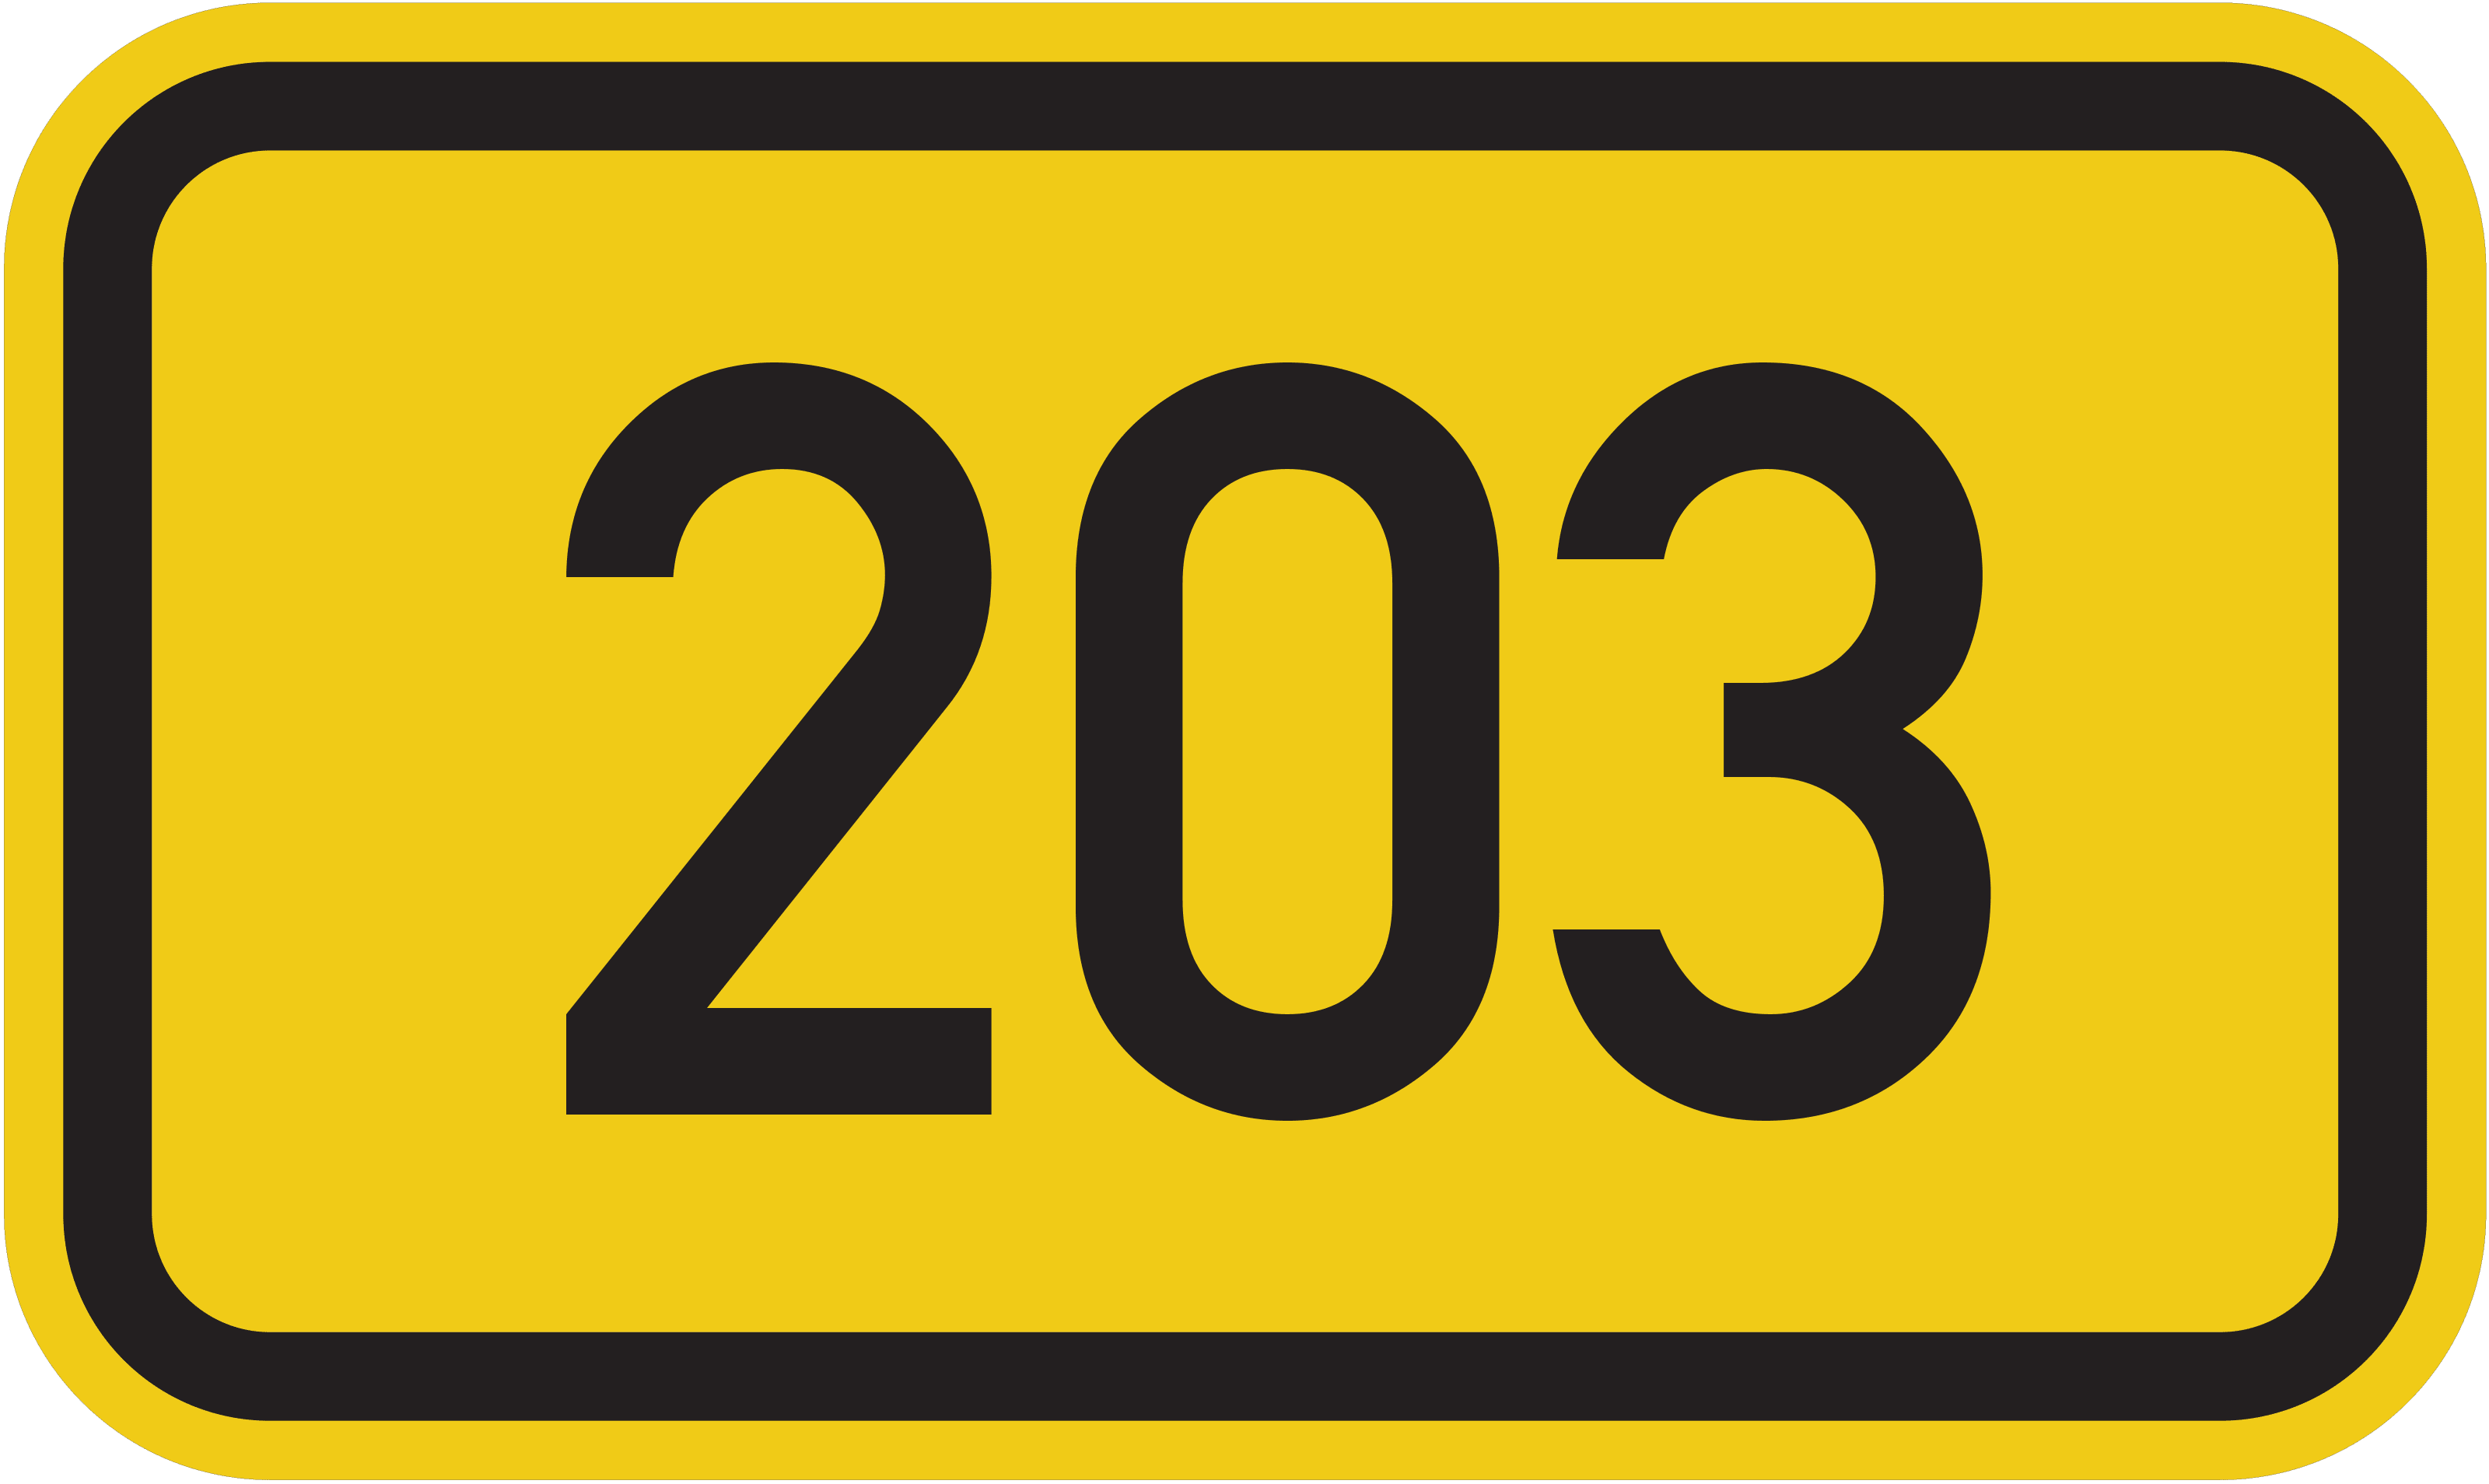 Bundesstraße B 203